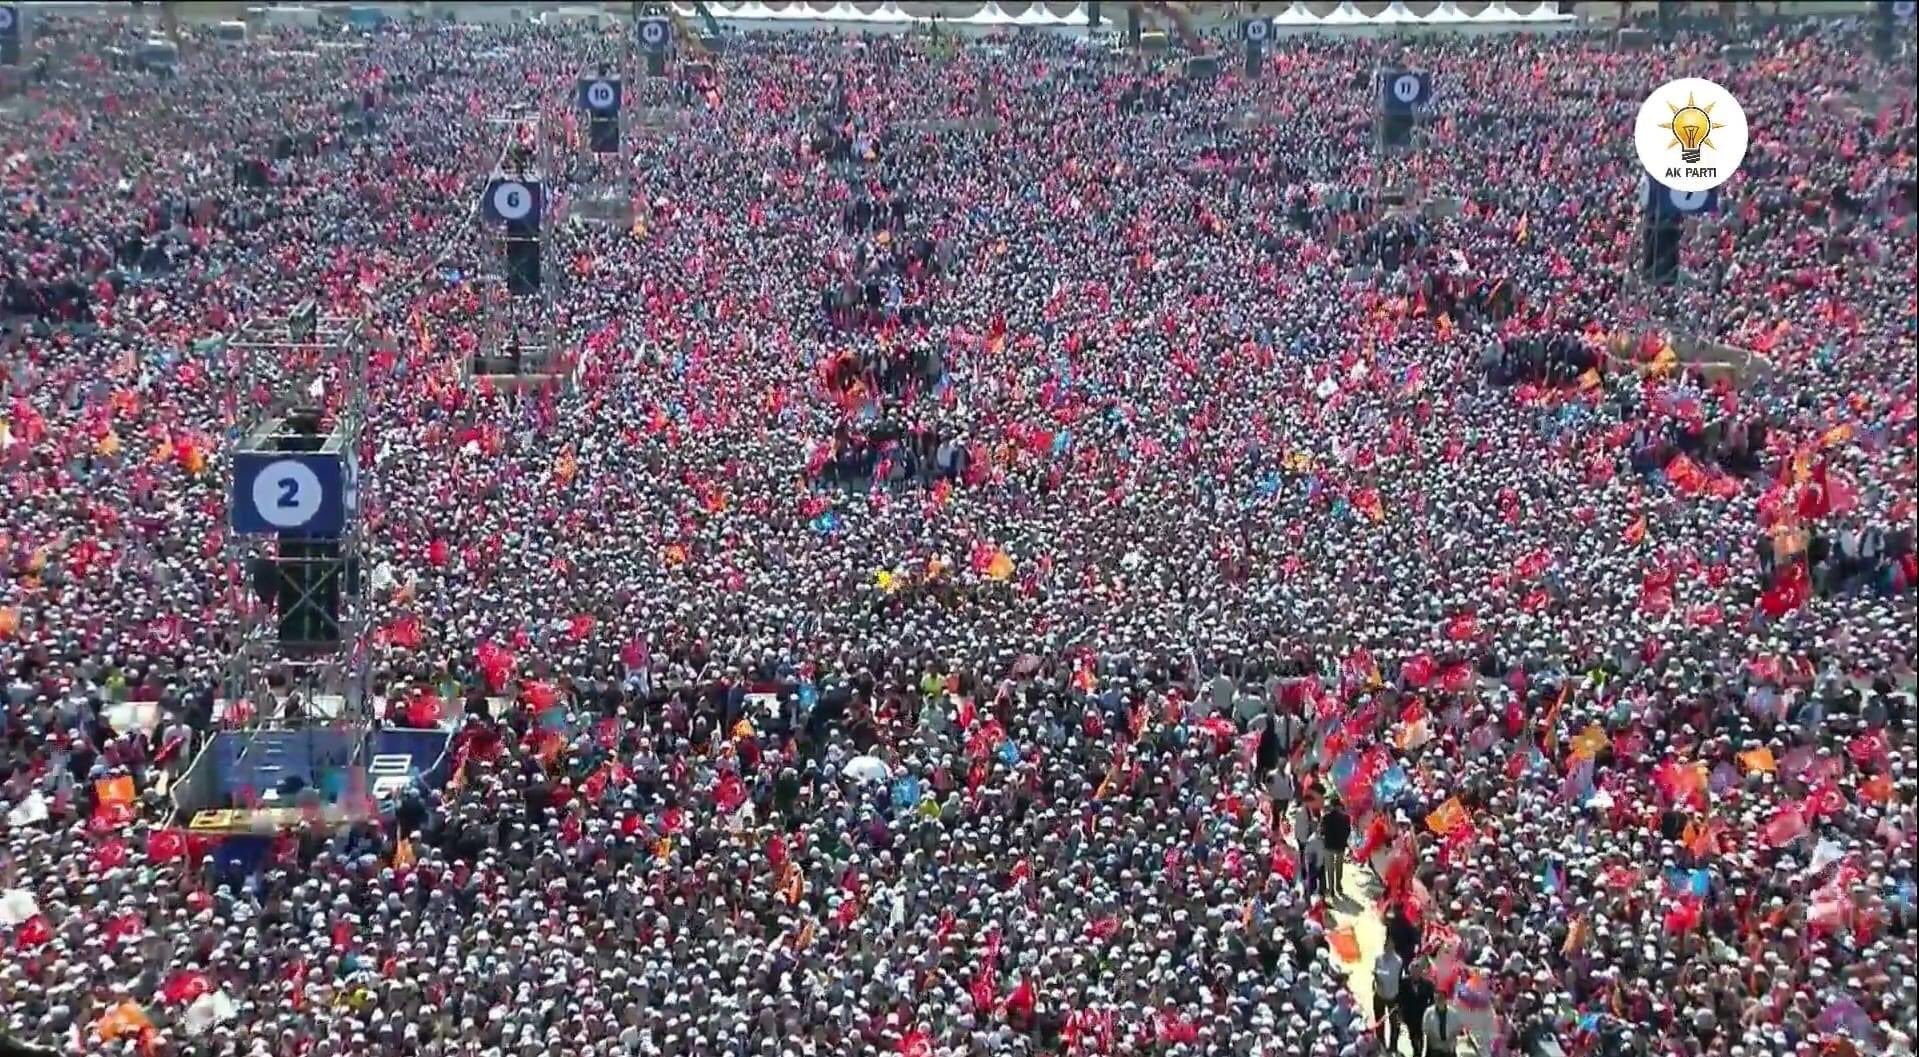 تجمع بشري مهول دعما لأردوغان في إسطنبول